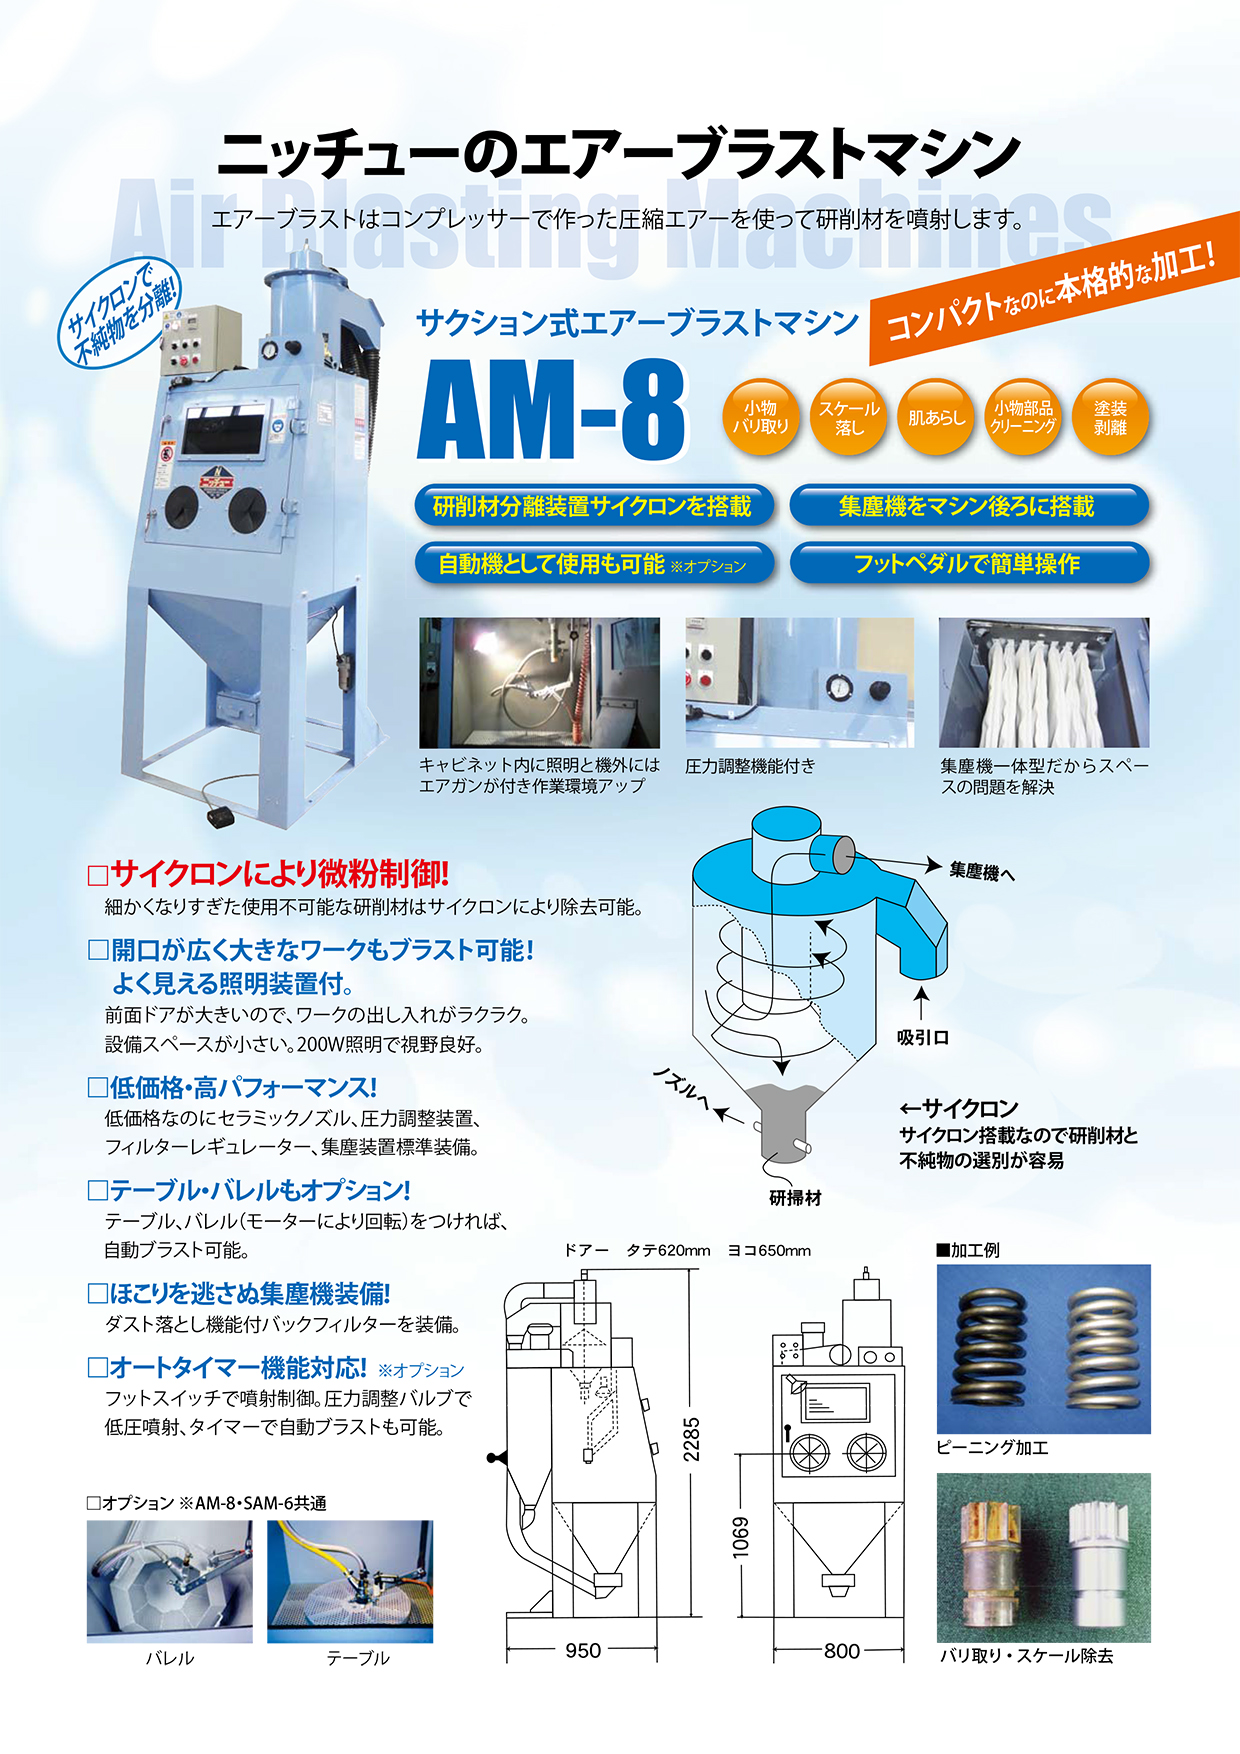 エアーブラスト汎用型 AM-8/SAM-6